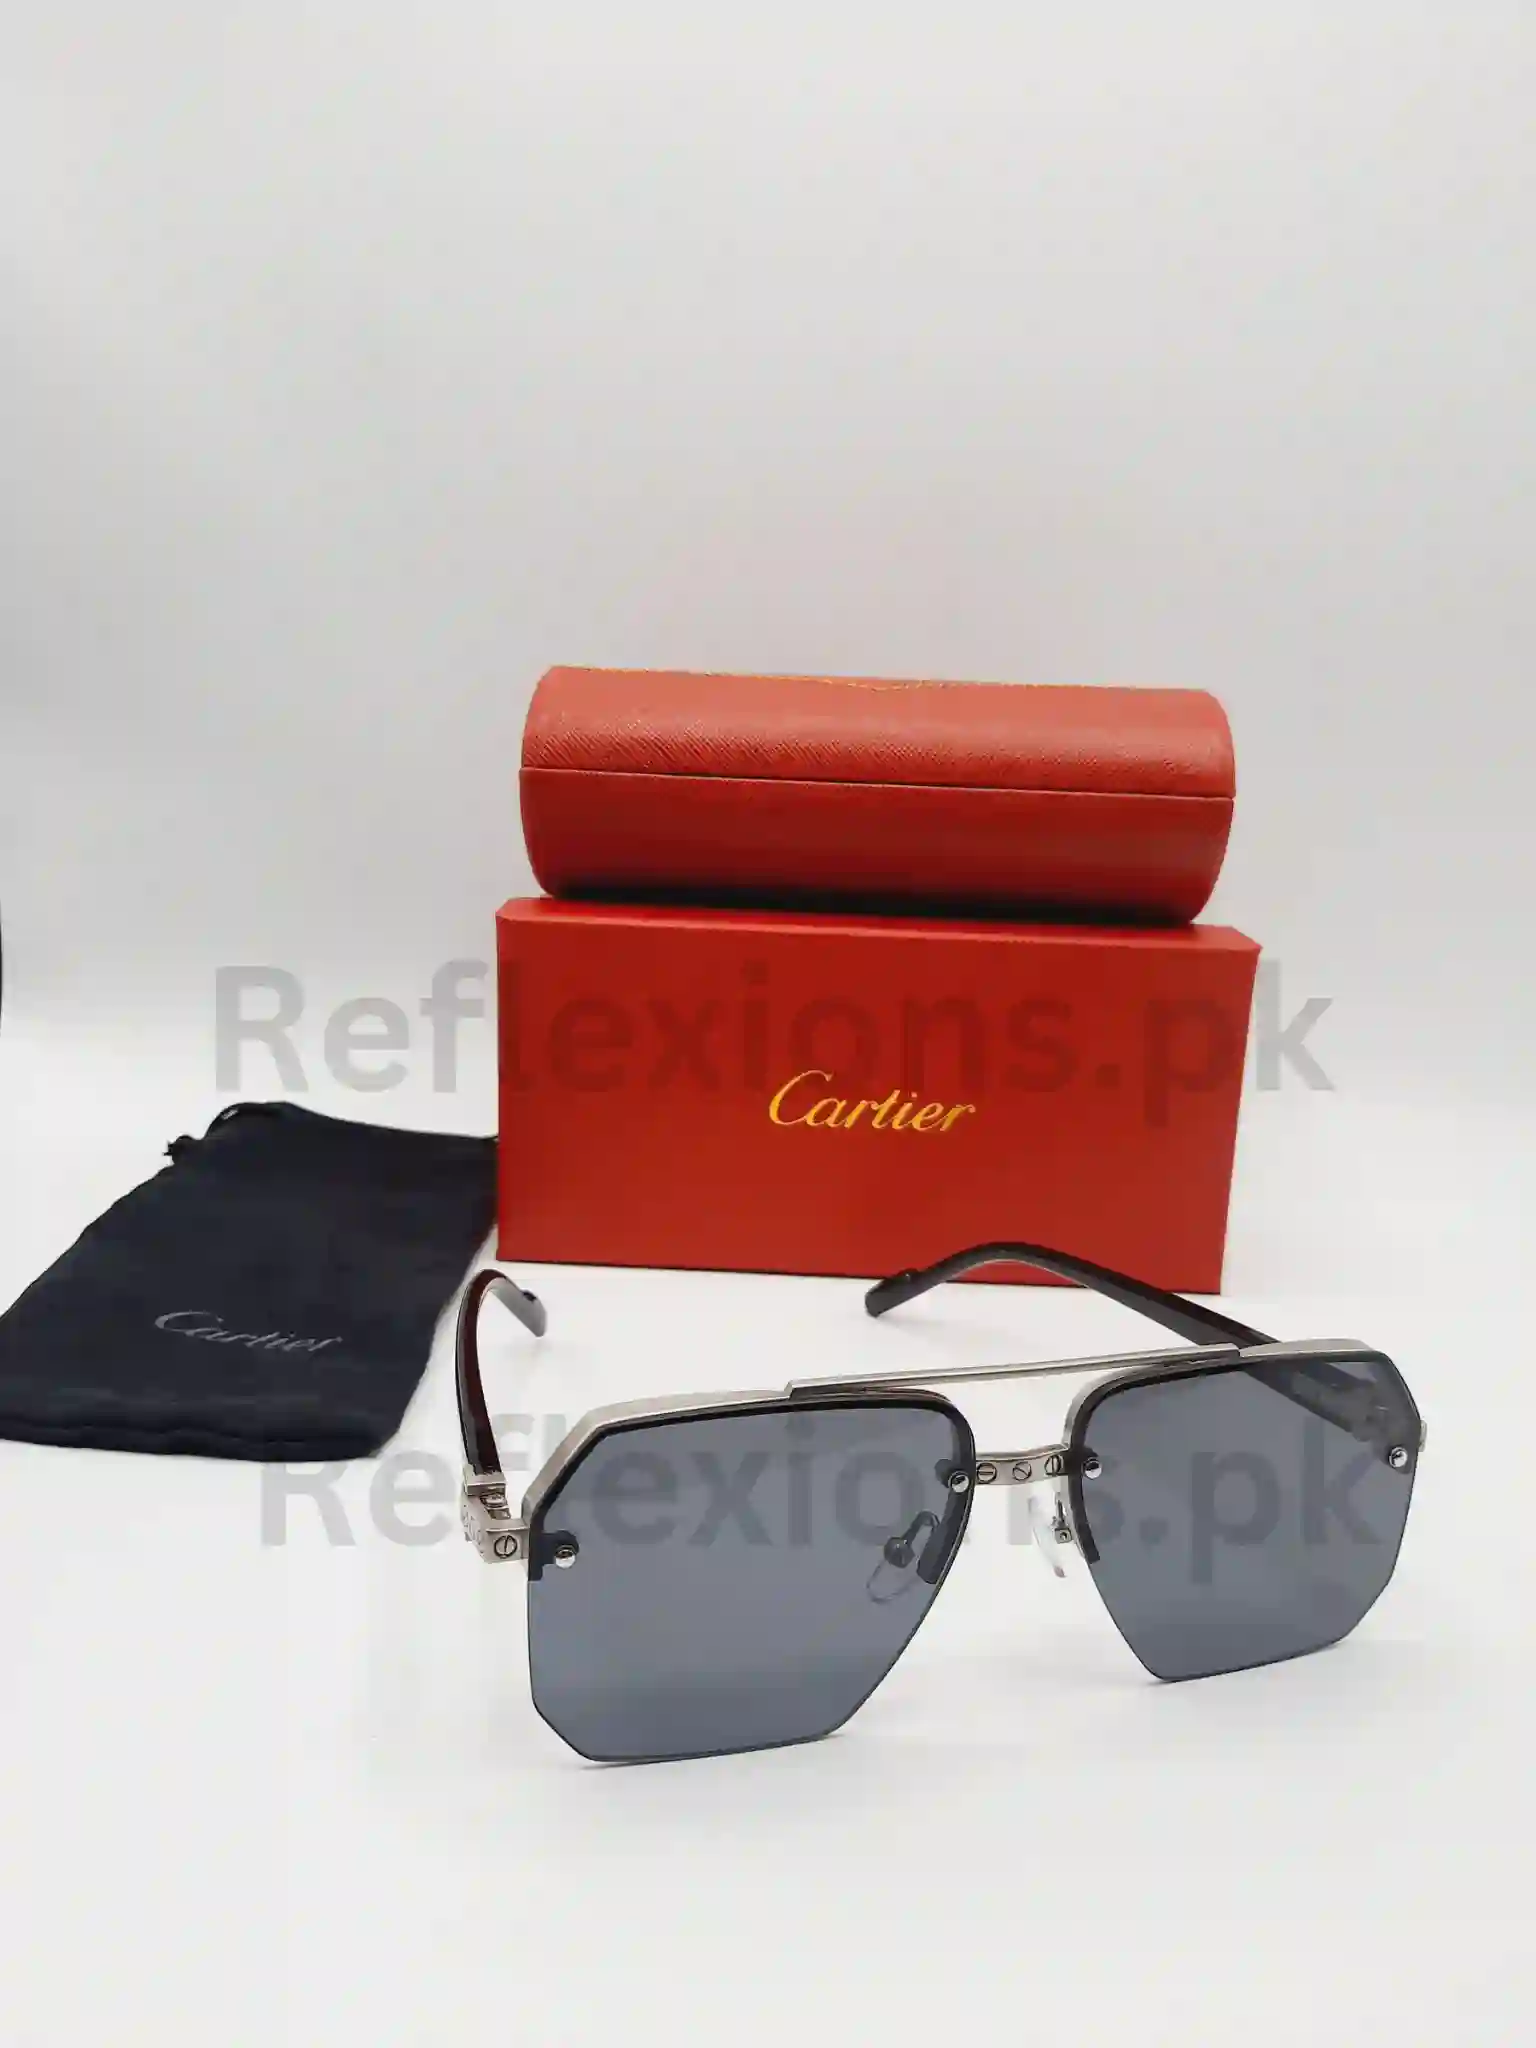 Cartier Sunglasses for Men-52423-125